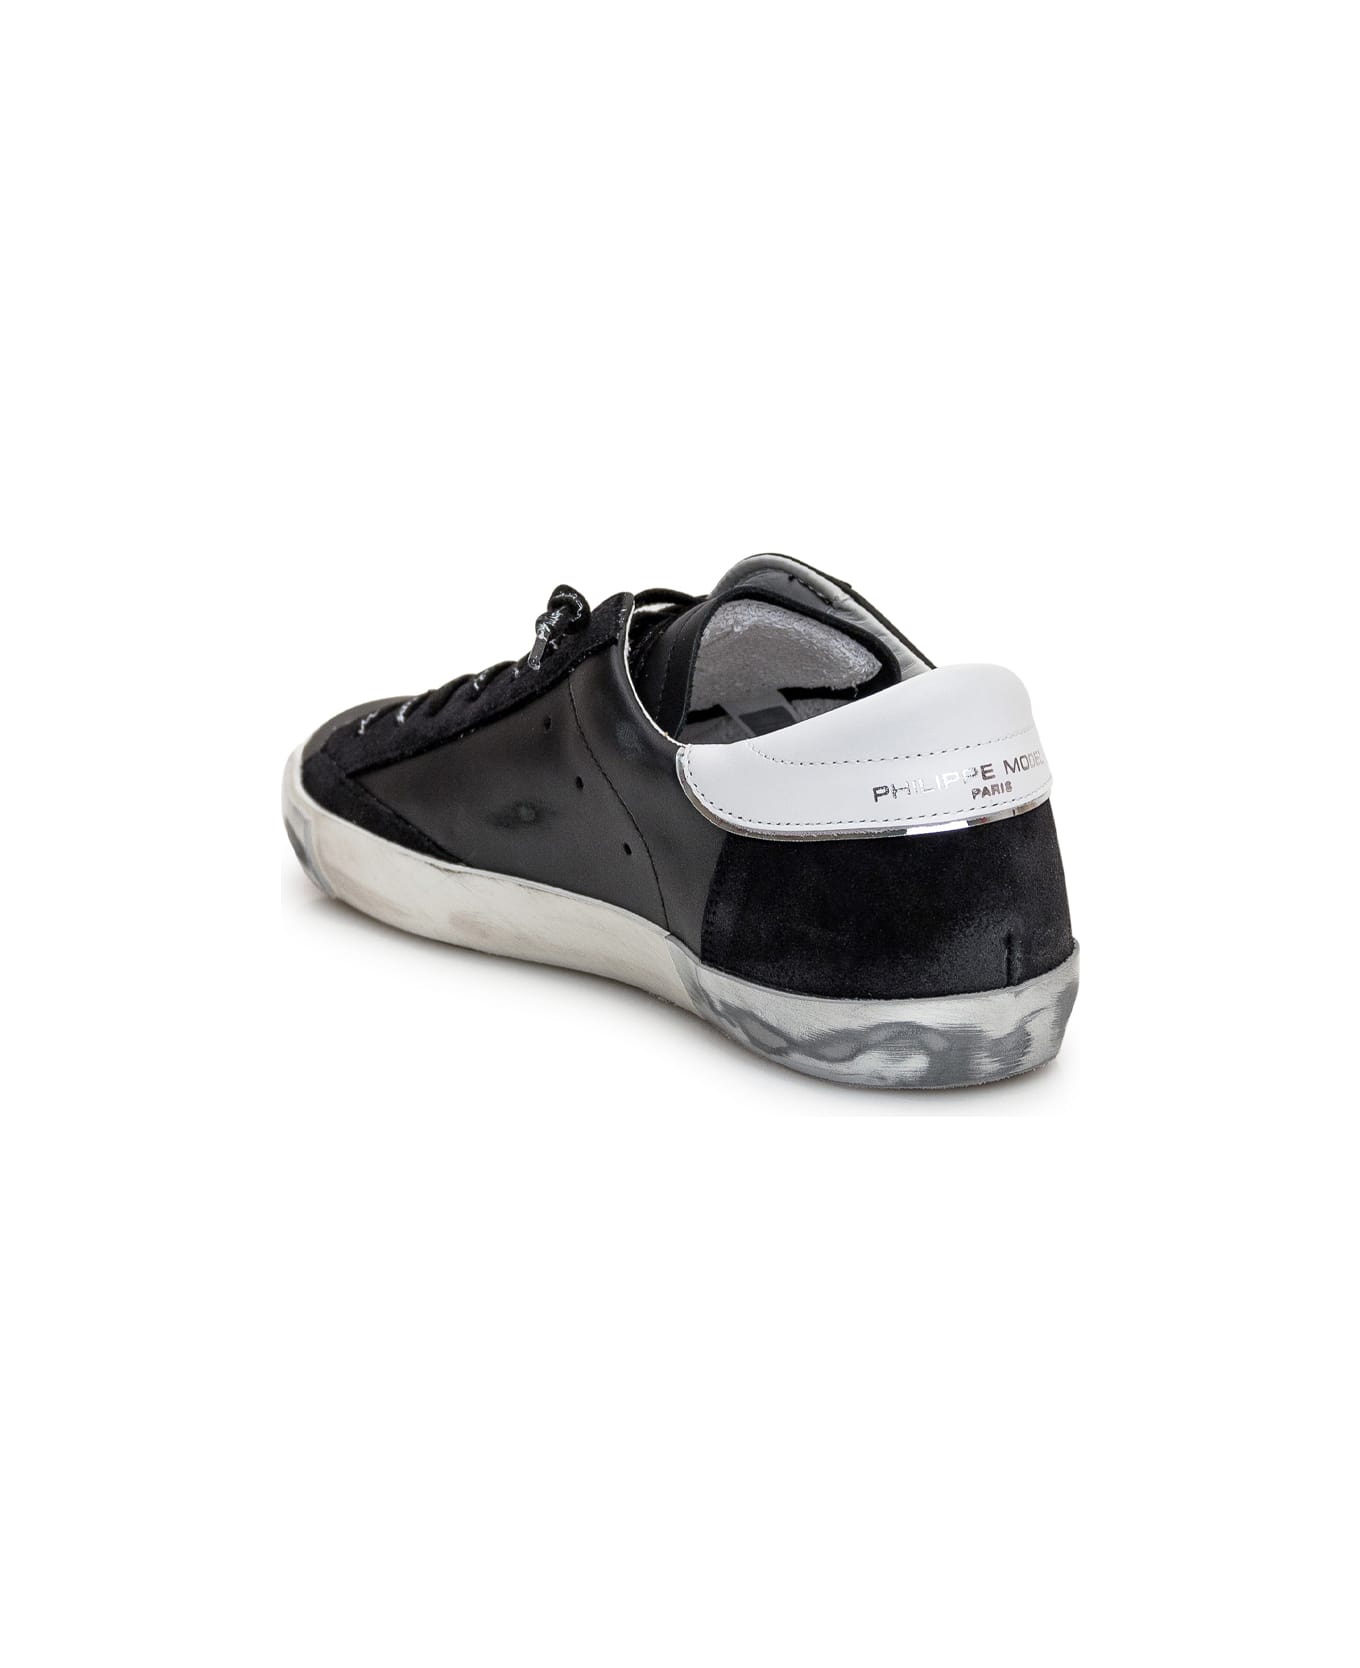 Philippe Model Prsx Sneaker - Nero/argento